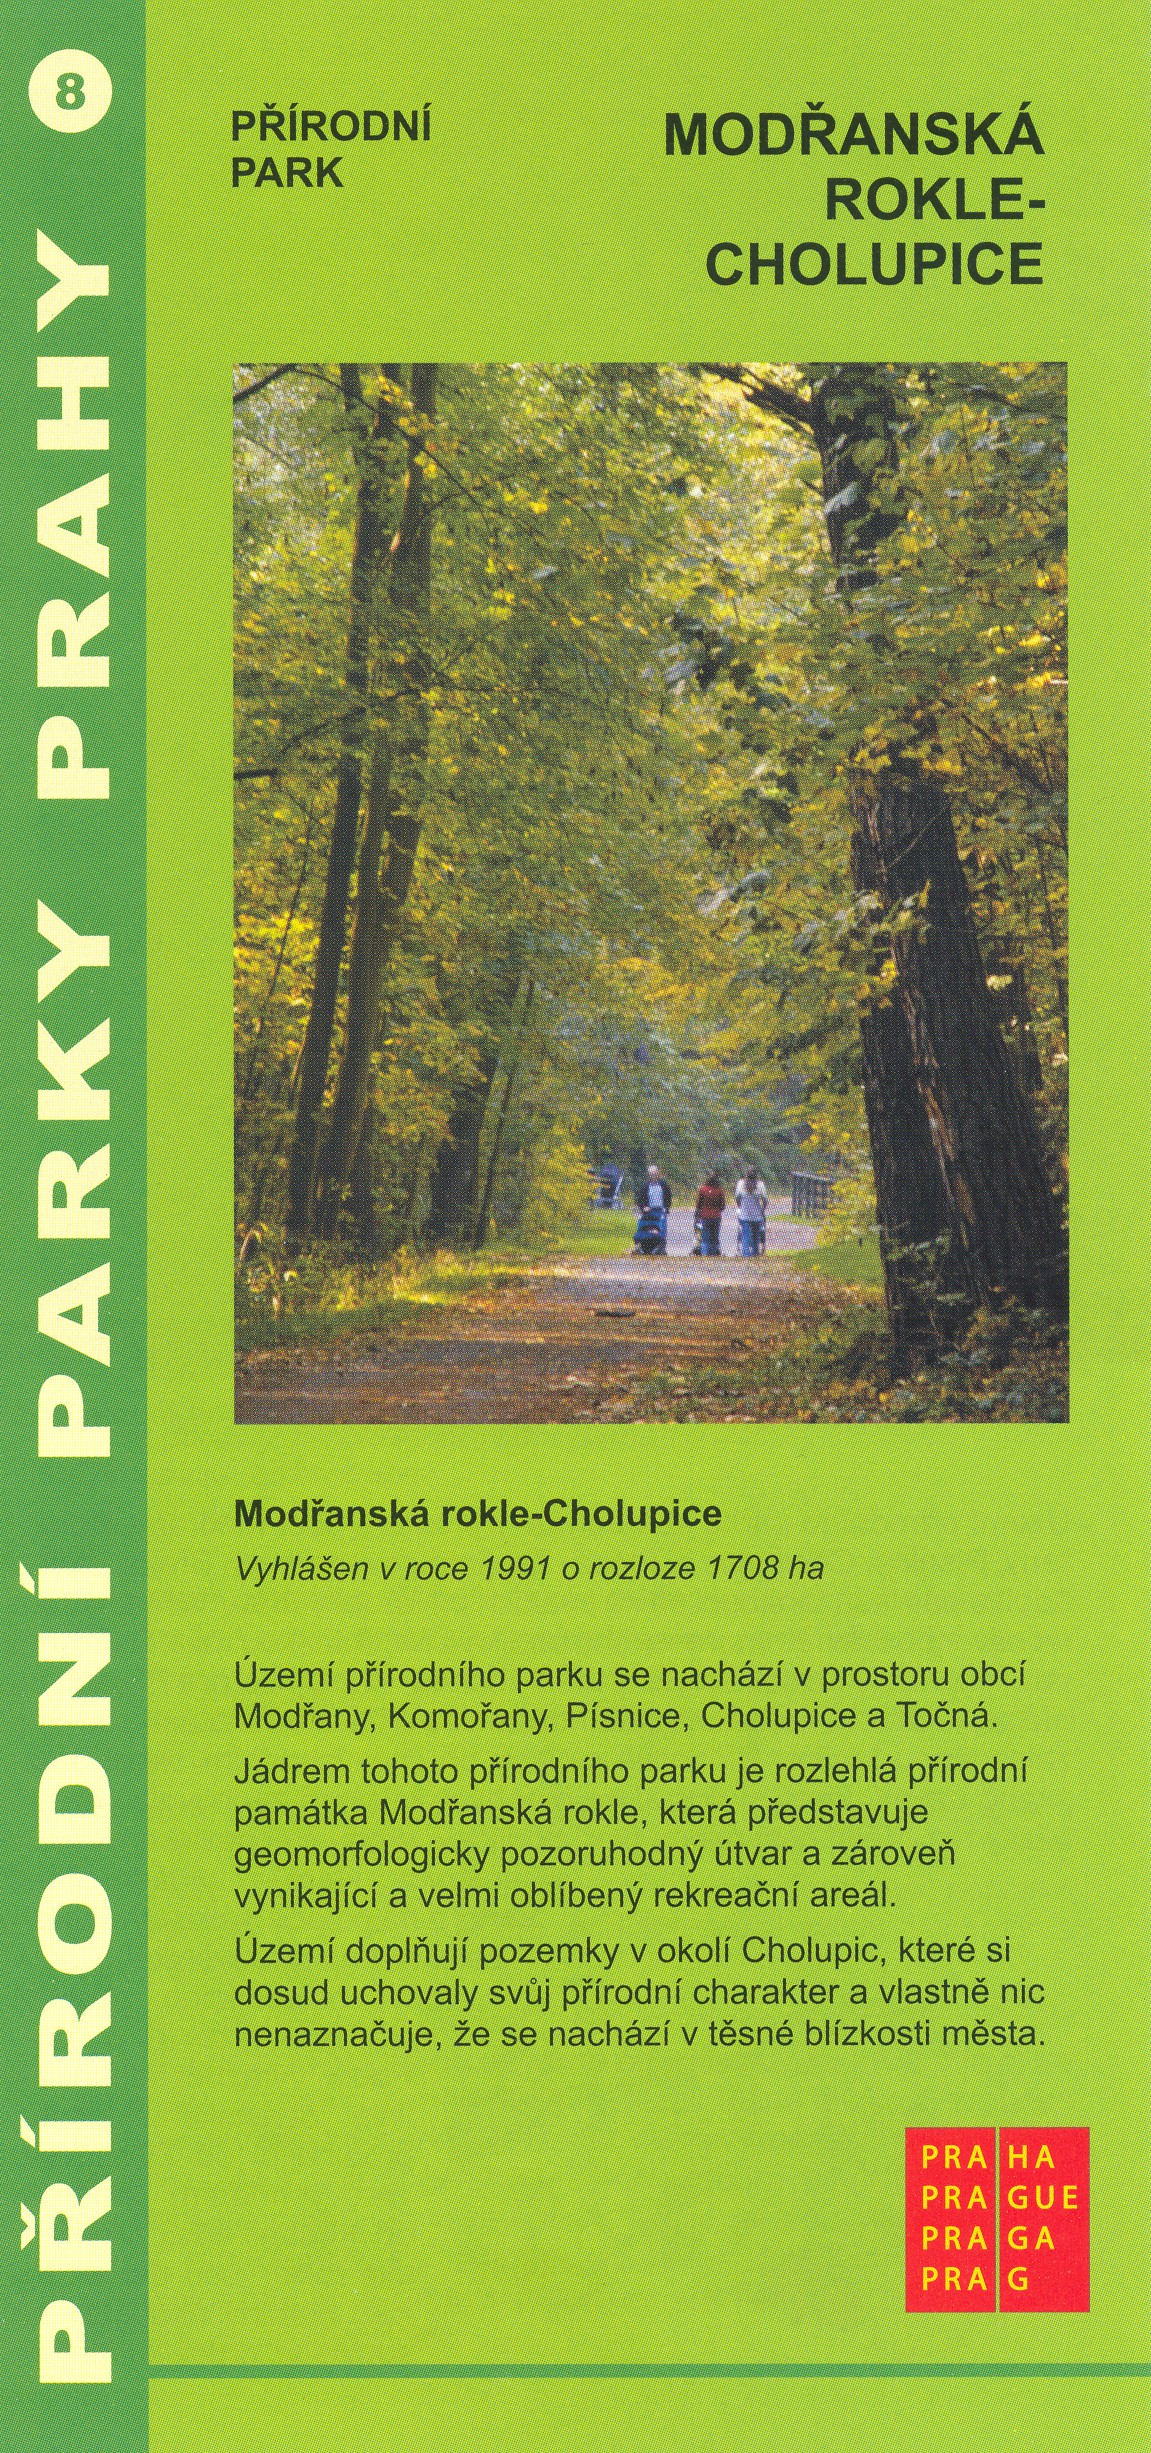 informační materiál Přírodní parky Prahy, č.8 - Modřanská rokle - Cholupice